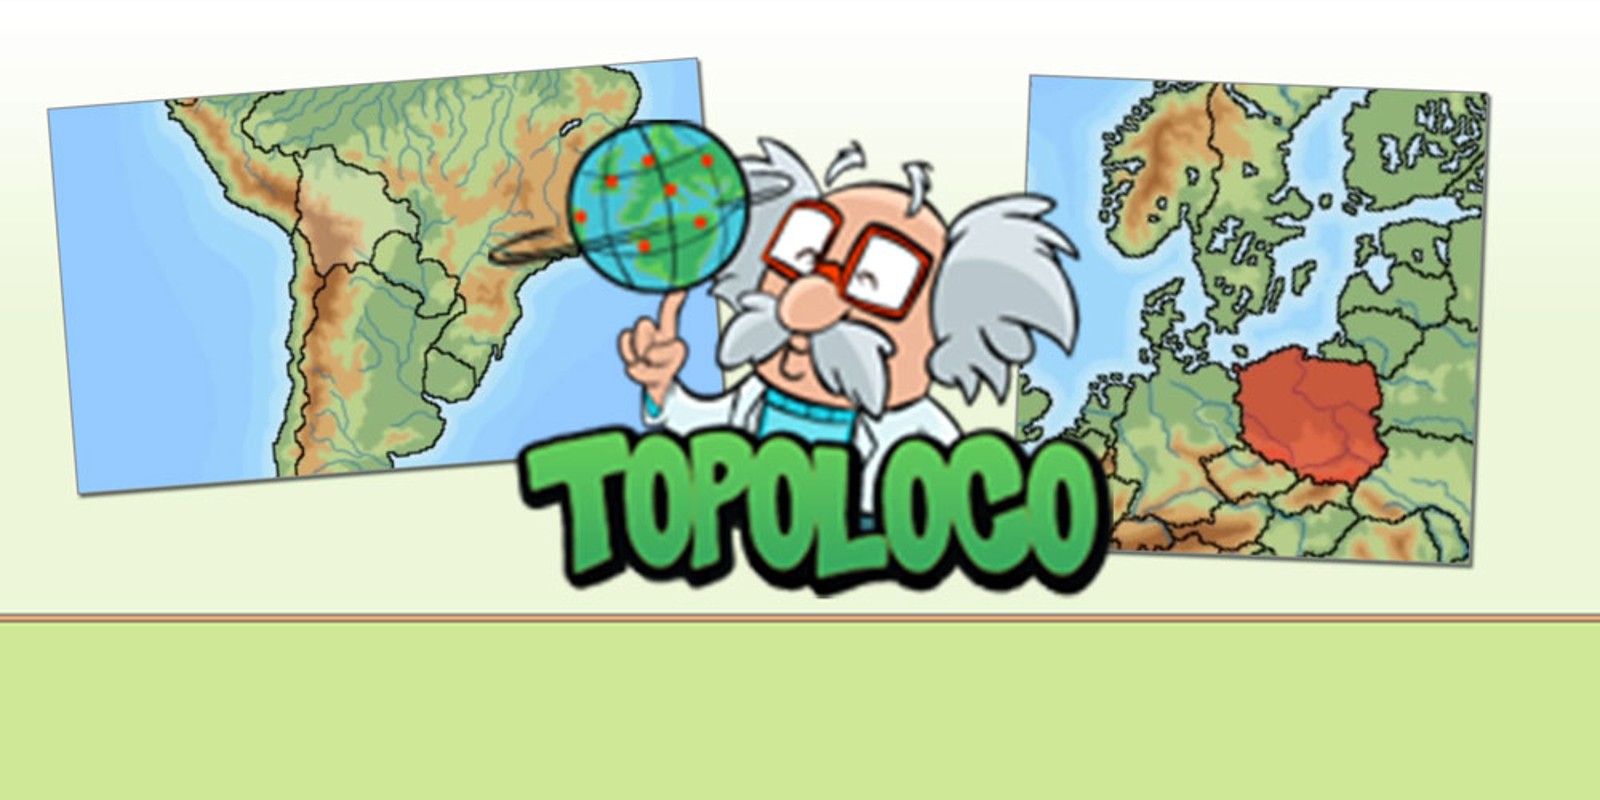 Topoloco - pazzi per topografia